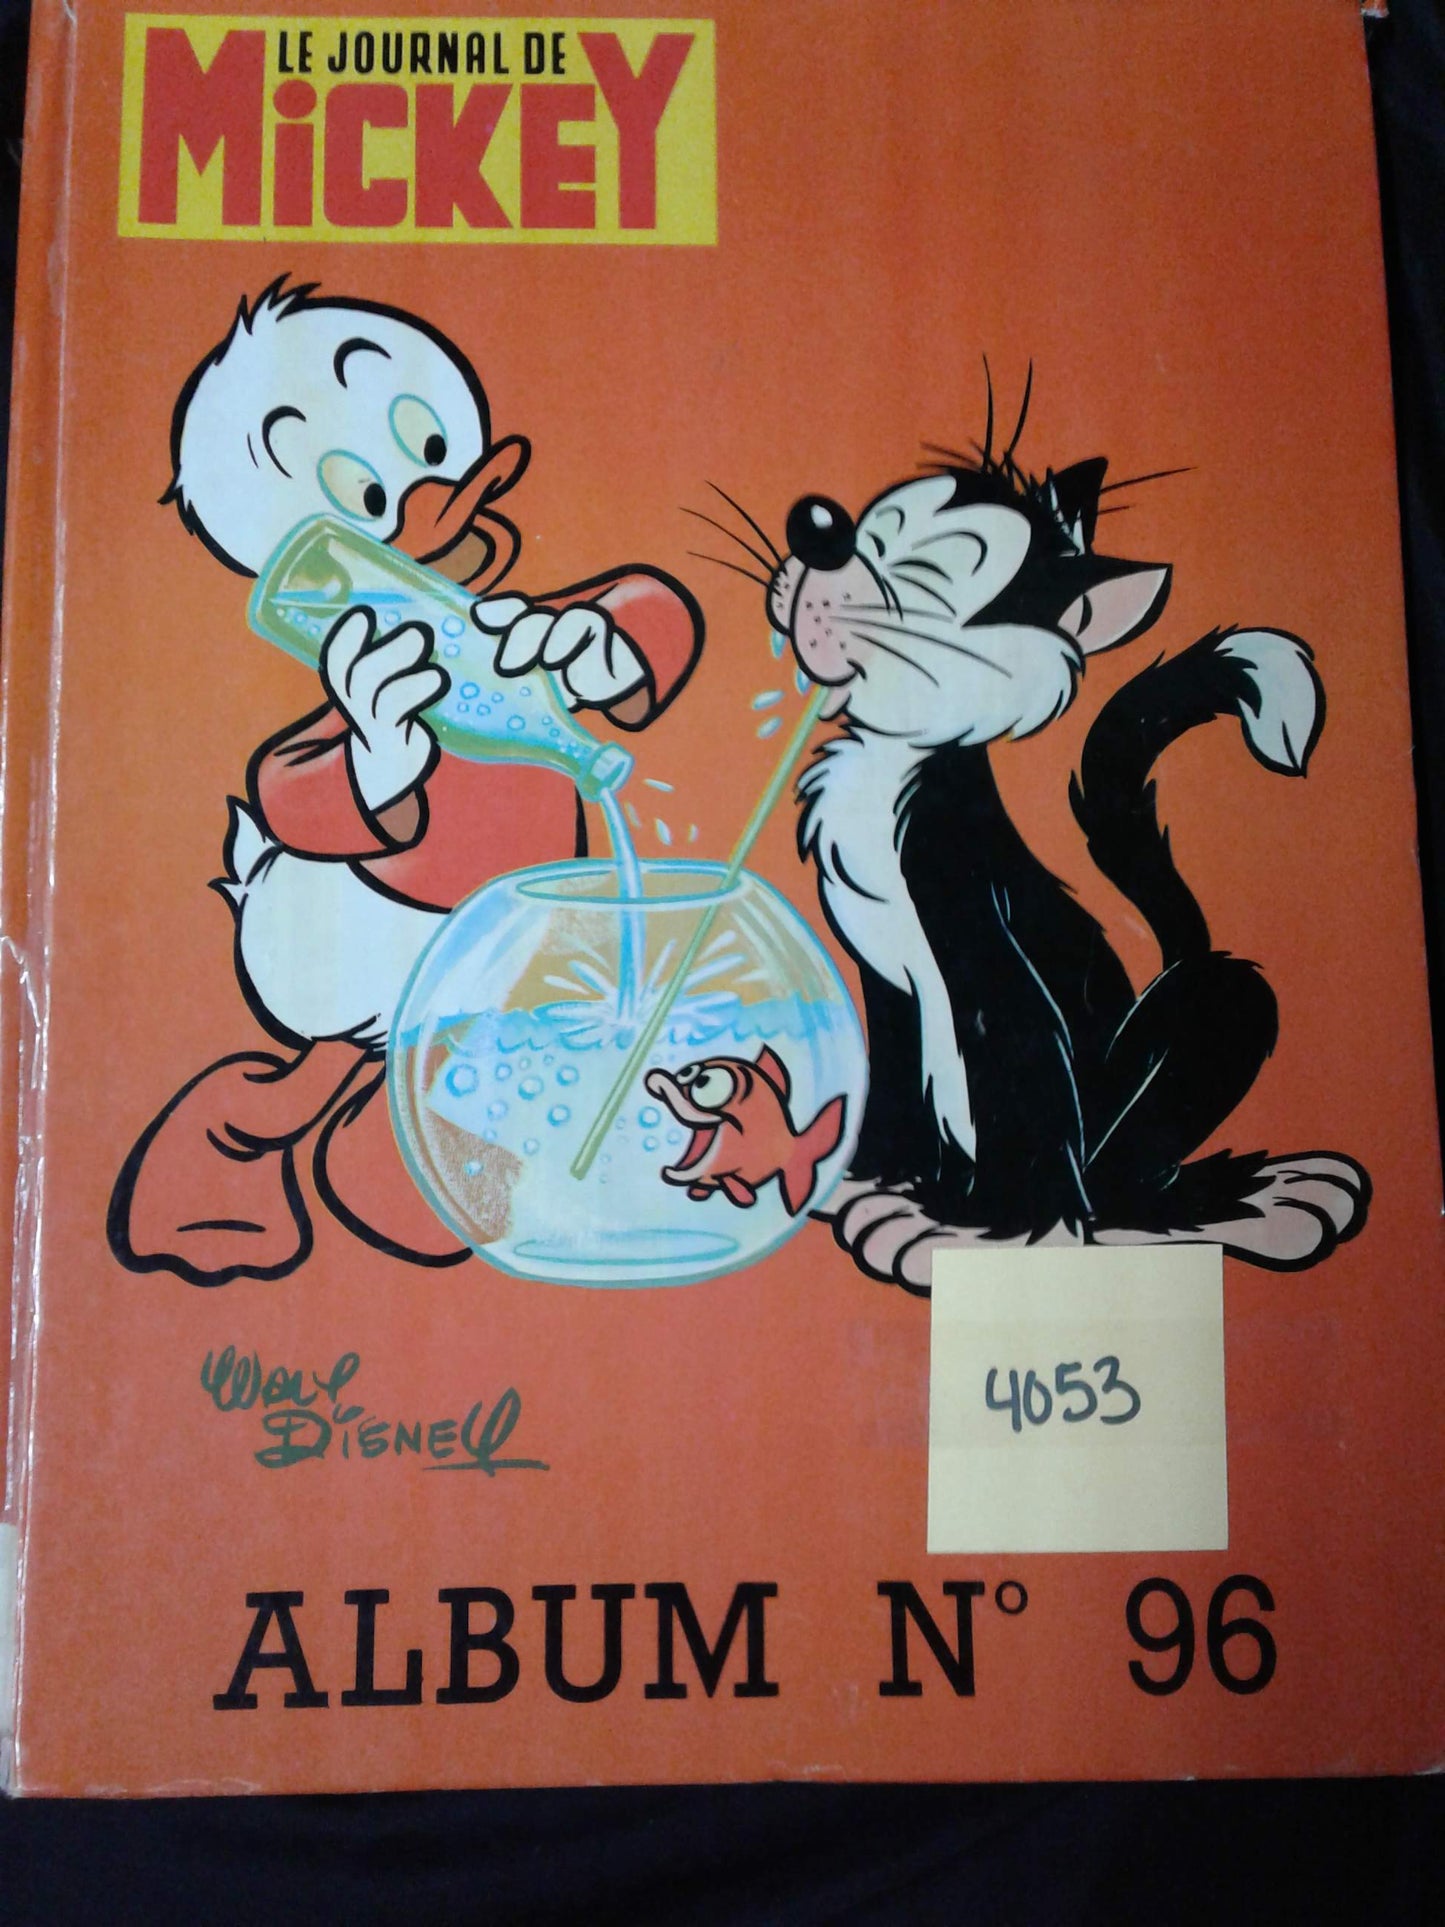 Le journal de Mickey album no 96